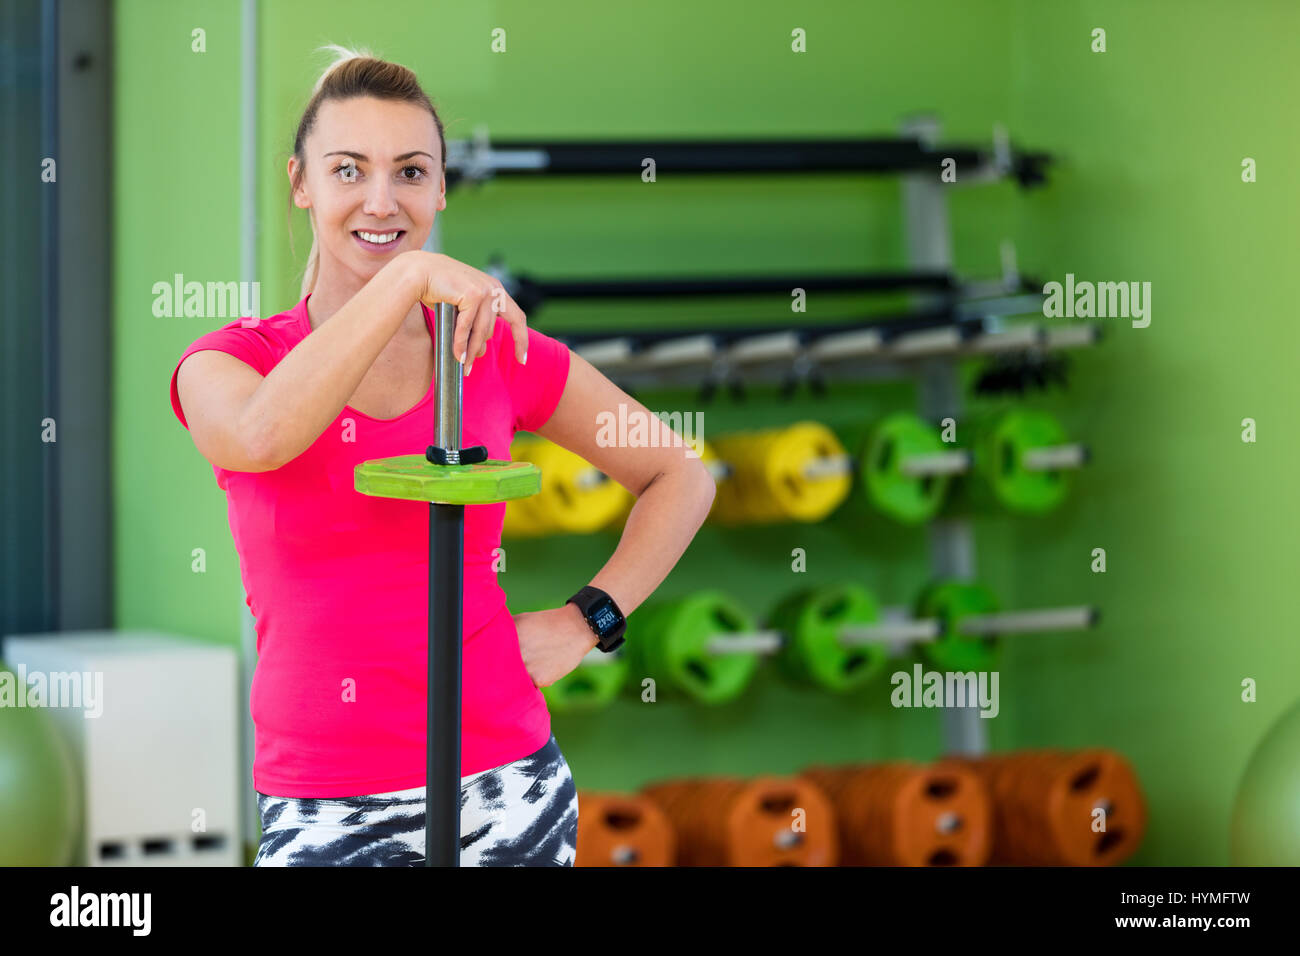 Colocar a la mujer en un gimnasio mirando a la cámara, descansando después del ejercicio con barbell. Foto de stock